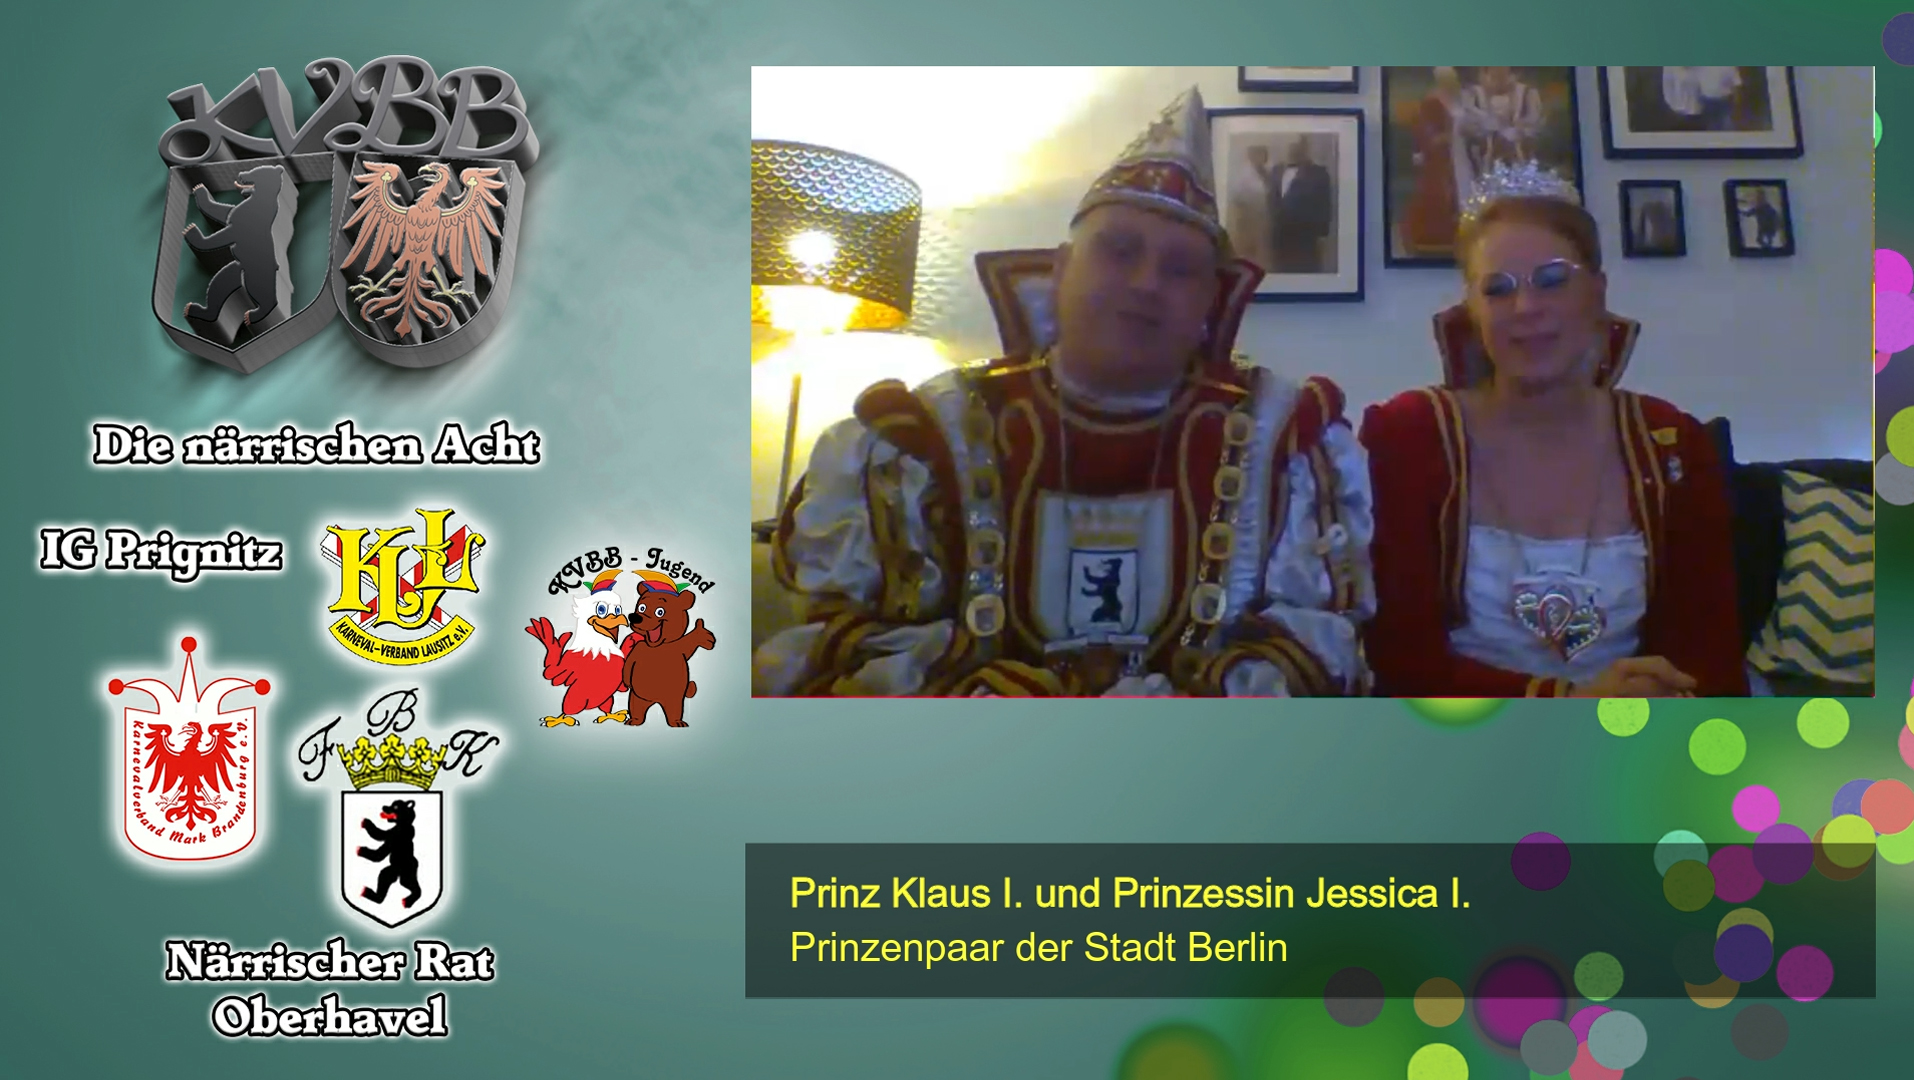 Der Präsident des Karnevalverbandes Berlin-Brandenburg e.V. Fred Witschel im Gespräch mit dem Prinzenpaar der Stadt Berlin Klaus I. und Jessica I.